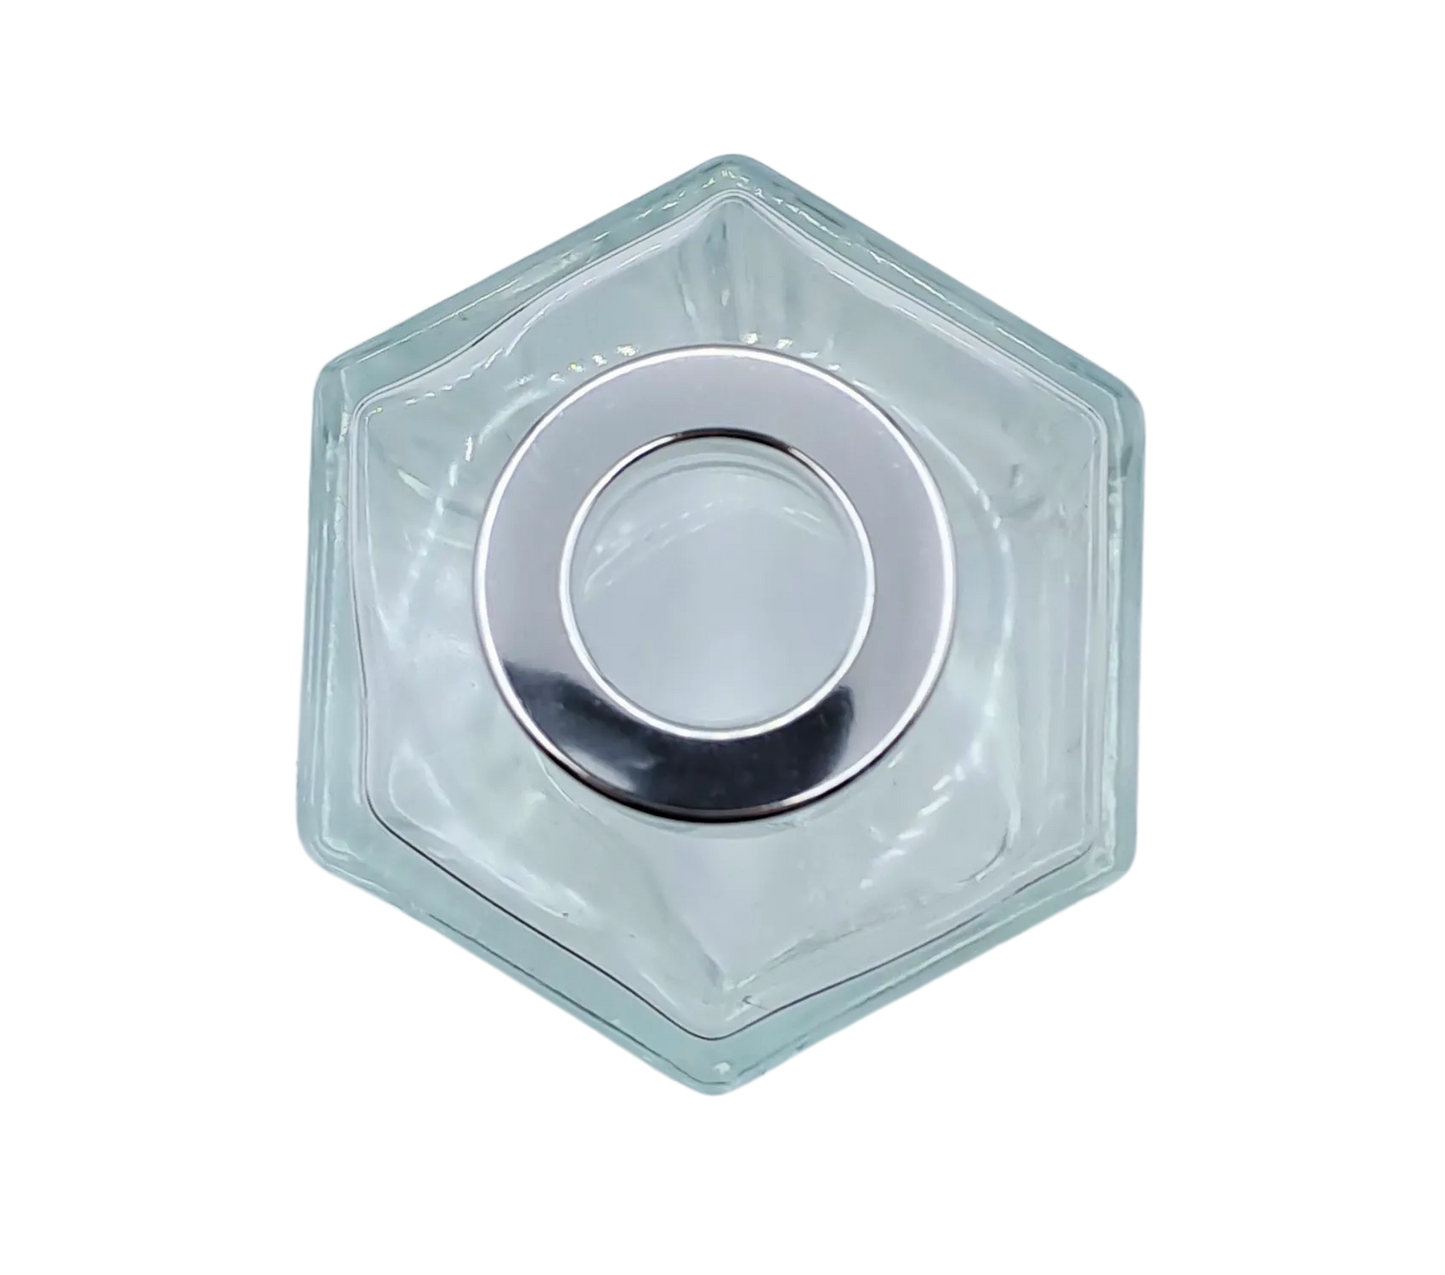 Bote 100 ml hexagonal transparente con tapón plateado para recarga de mikado. Plano cenital